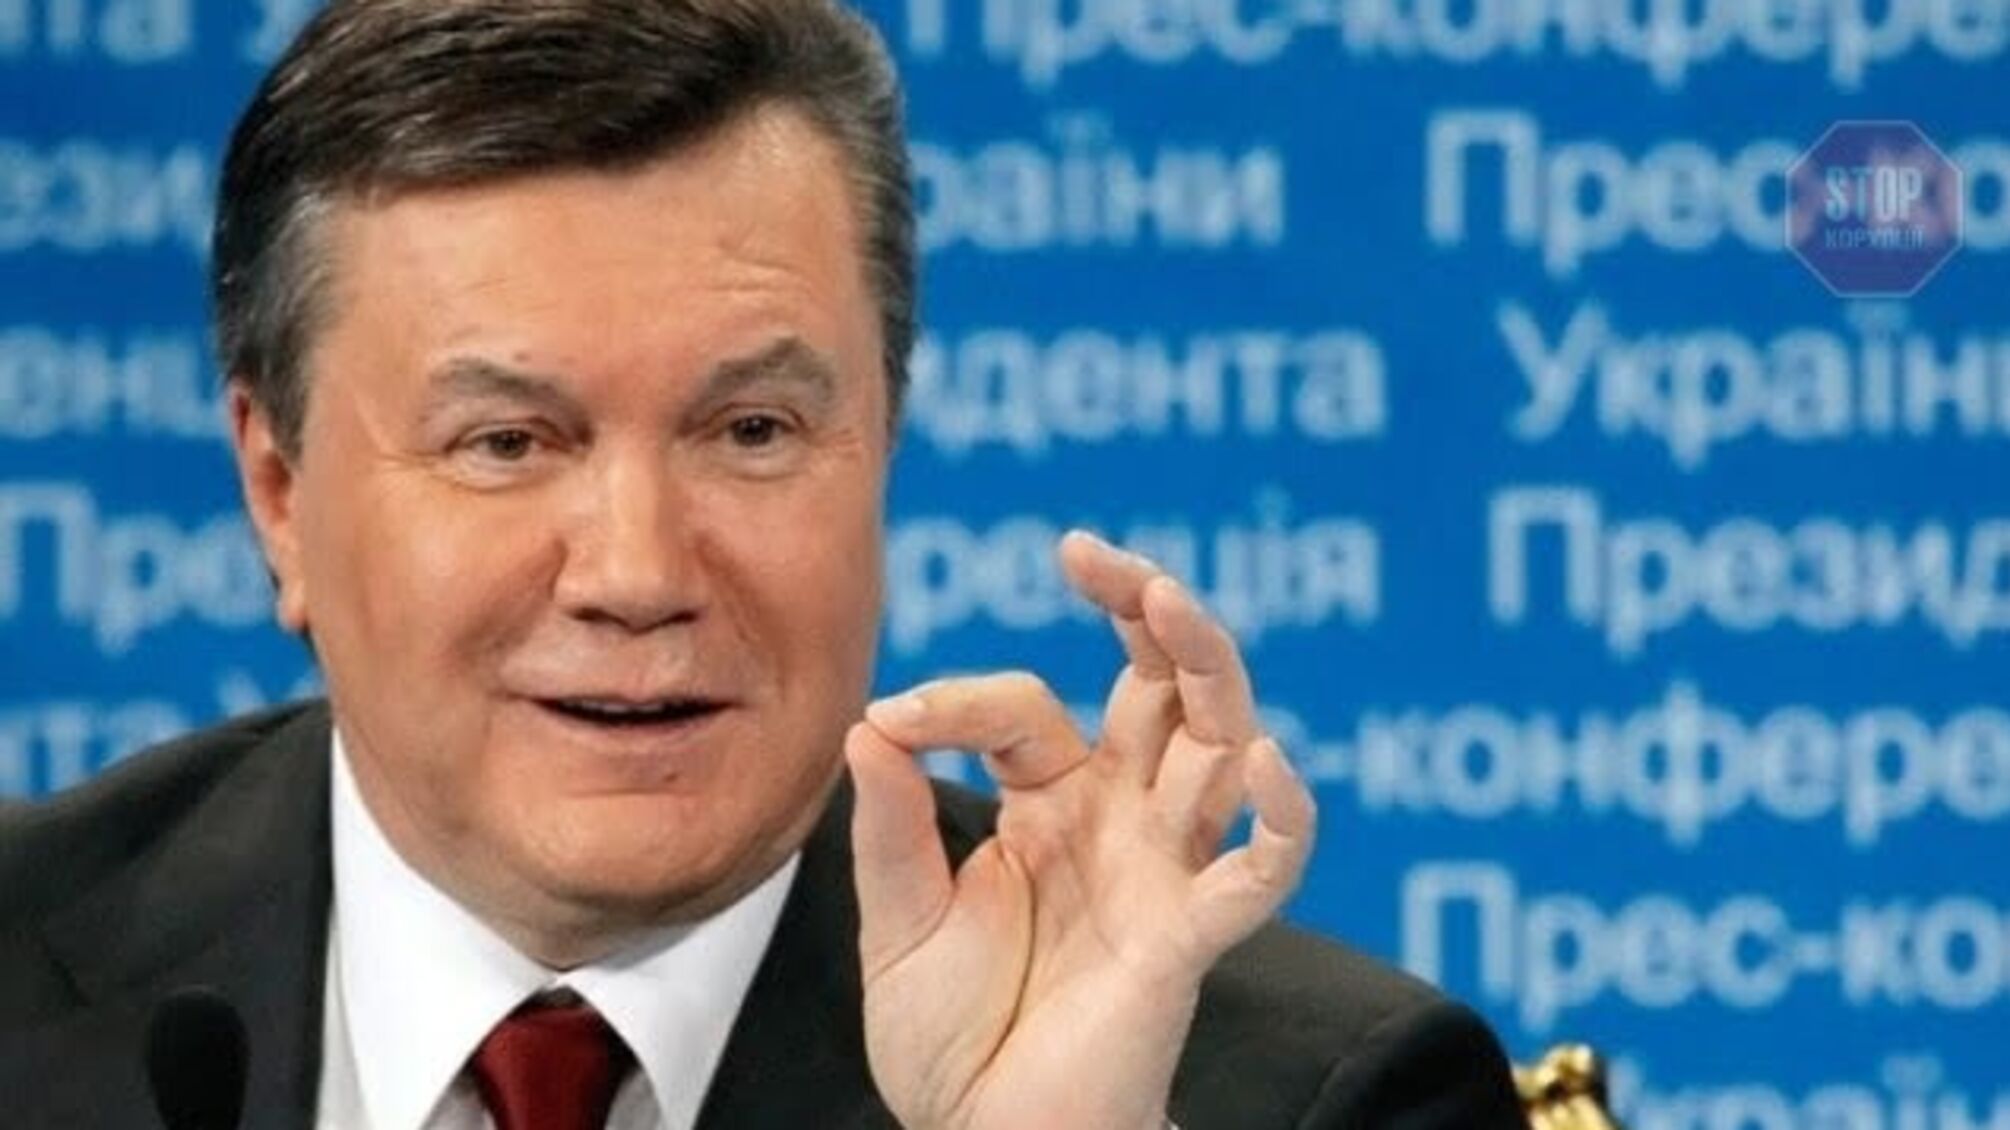 ЗМІ: Янукович може знову стати “президентом” України